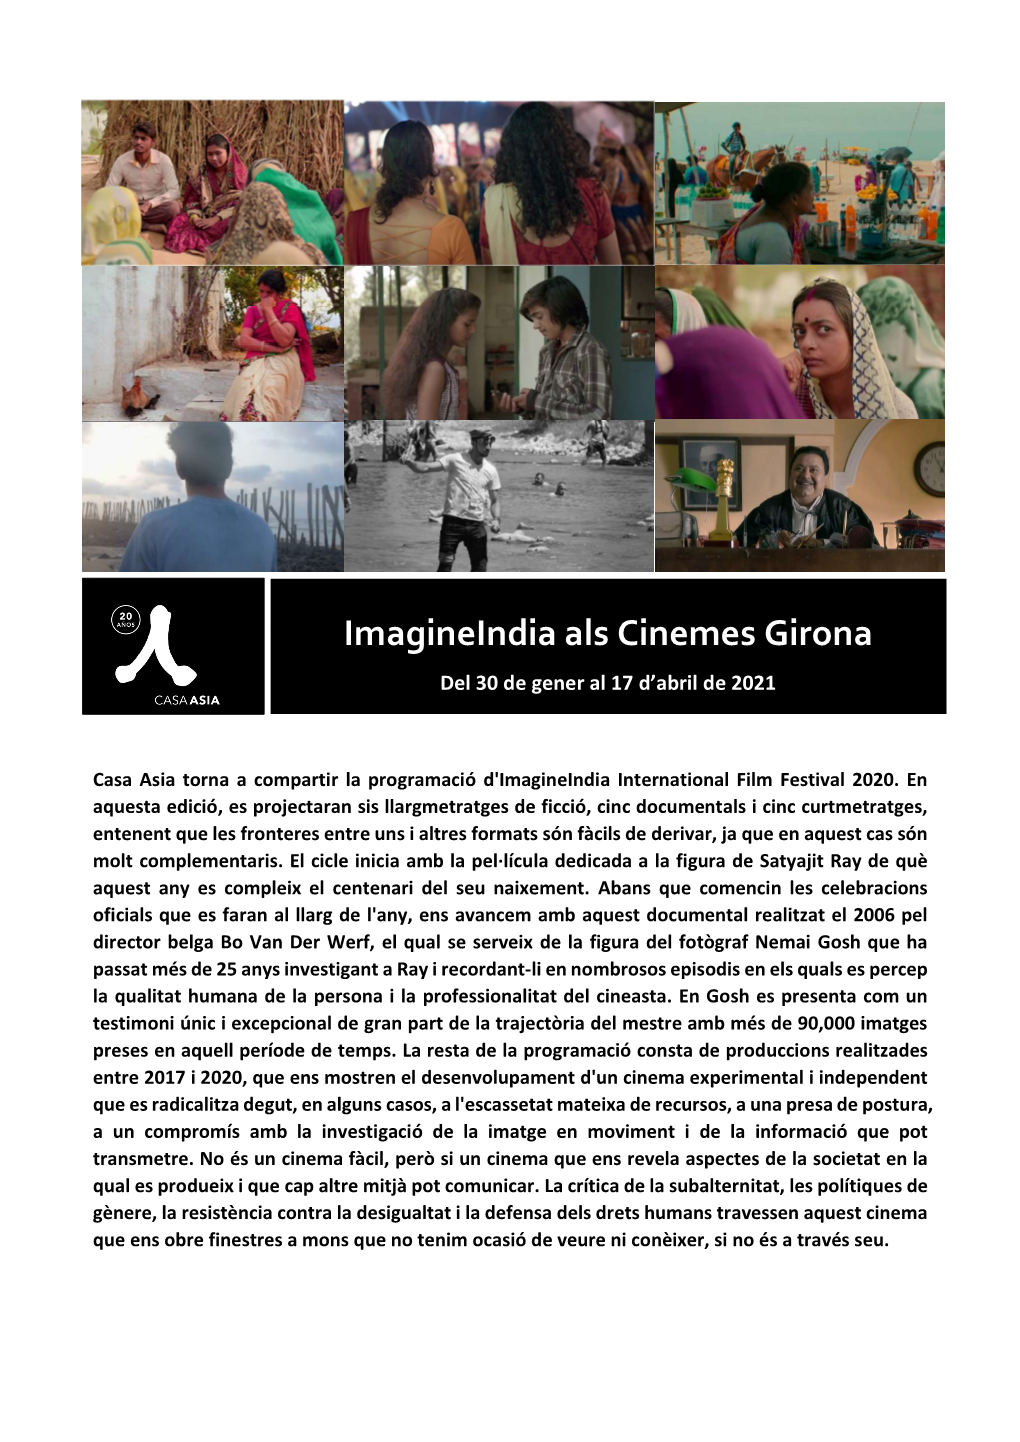 Imagineindia Als Cinemes Girona Del 30 De Gener Al 17 D’Abril De 2021